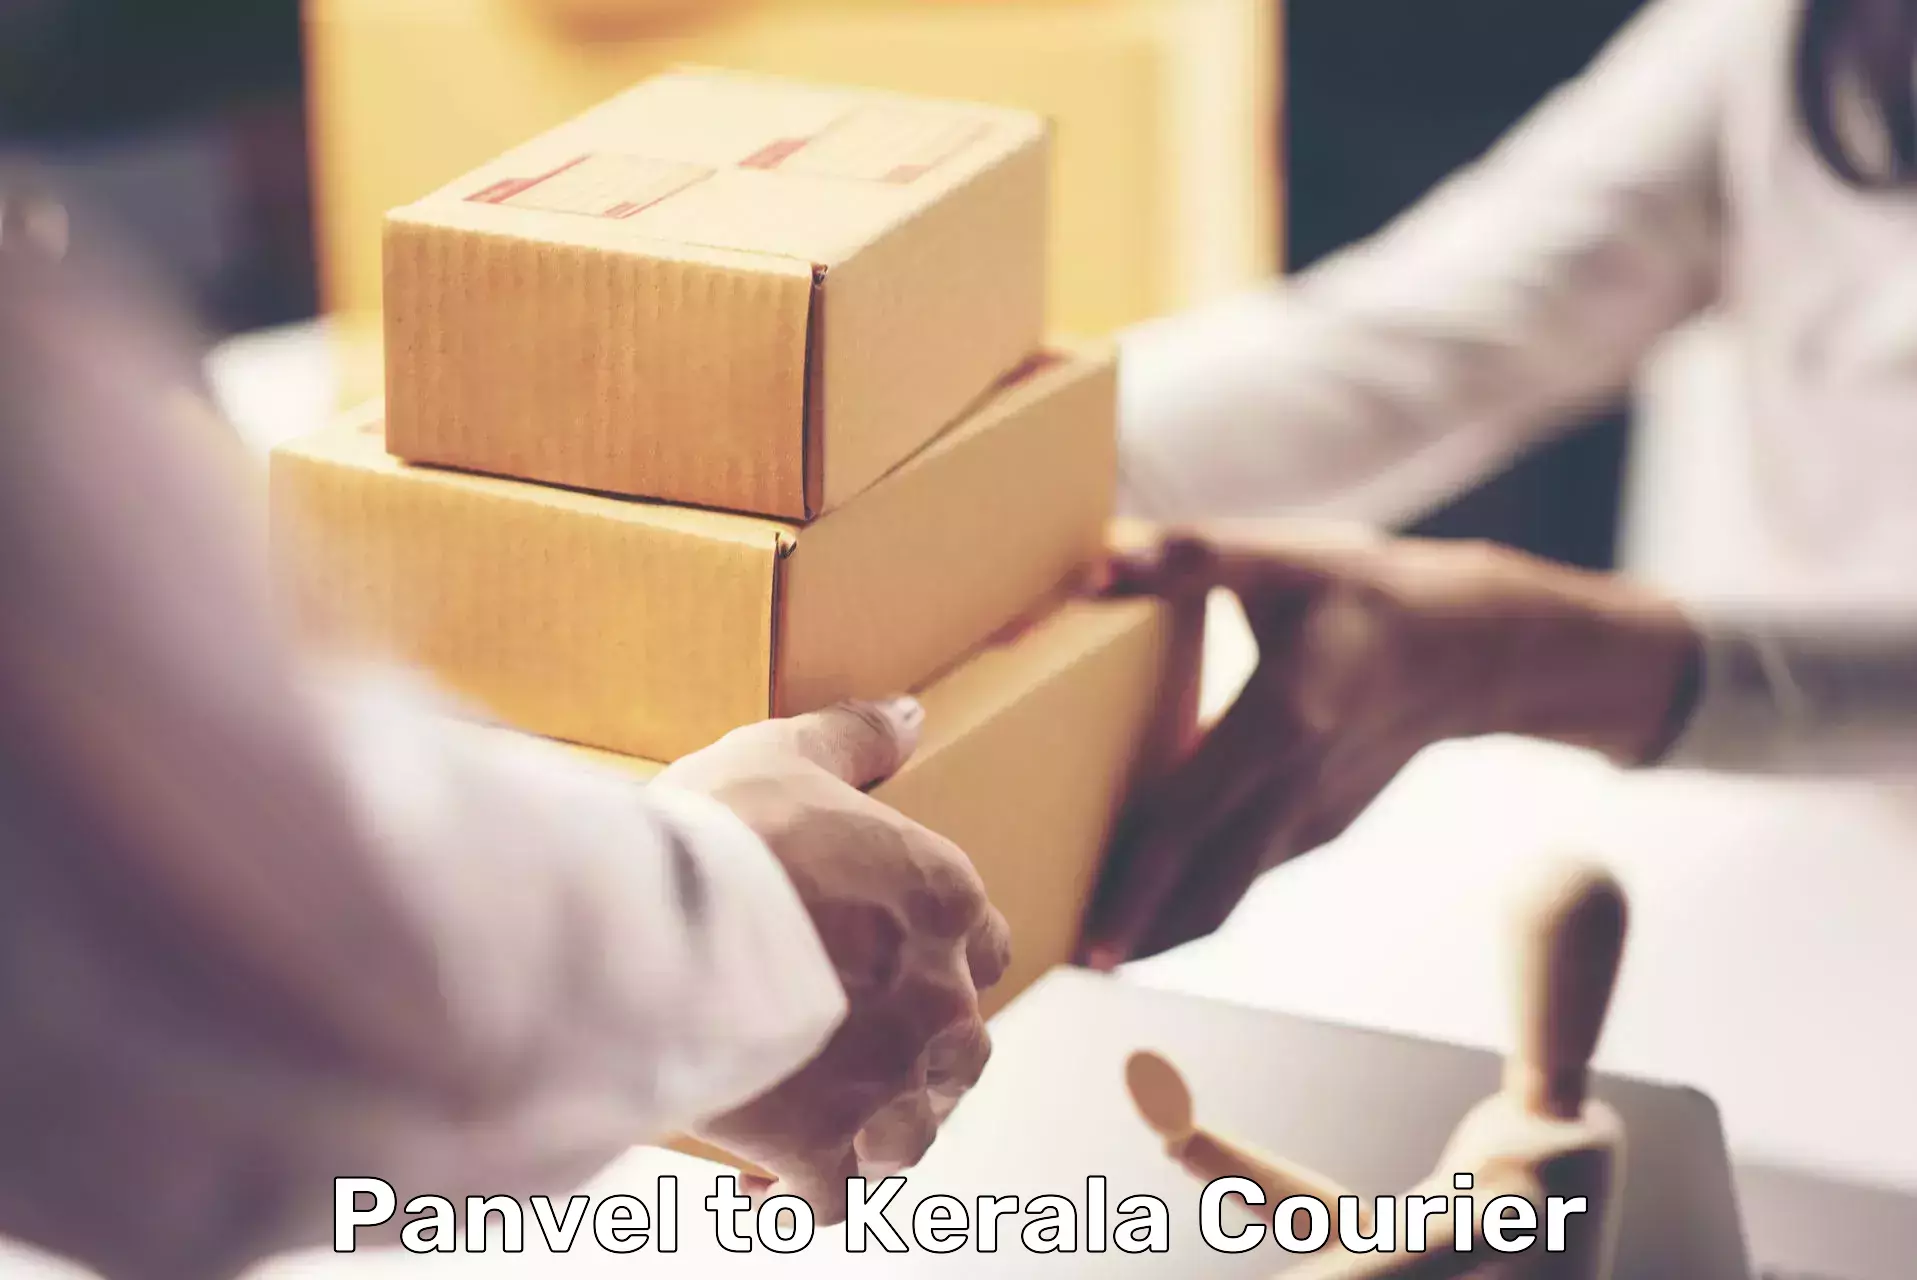 Modern courier technology Panvel to Kodungallur